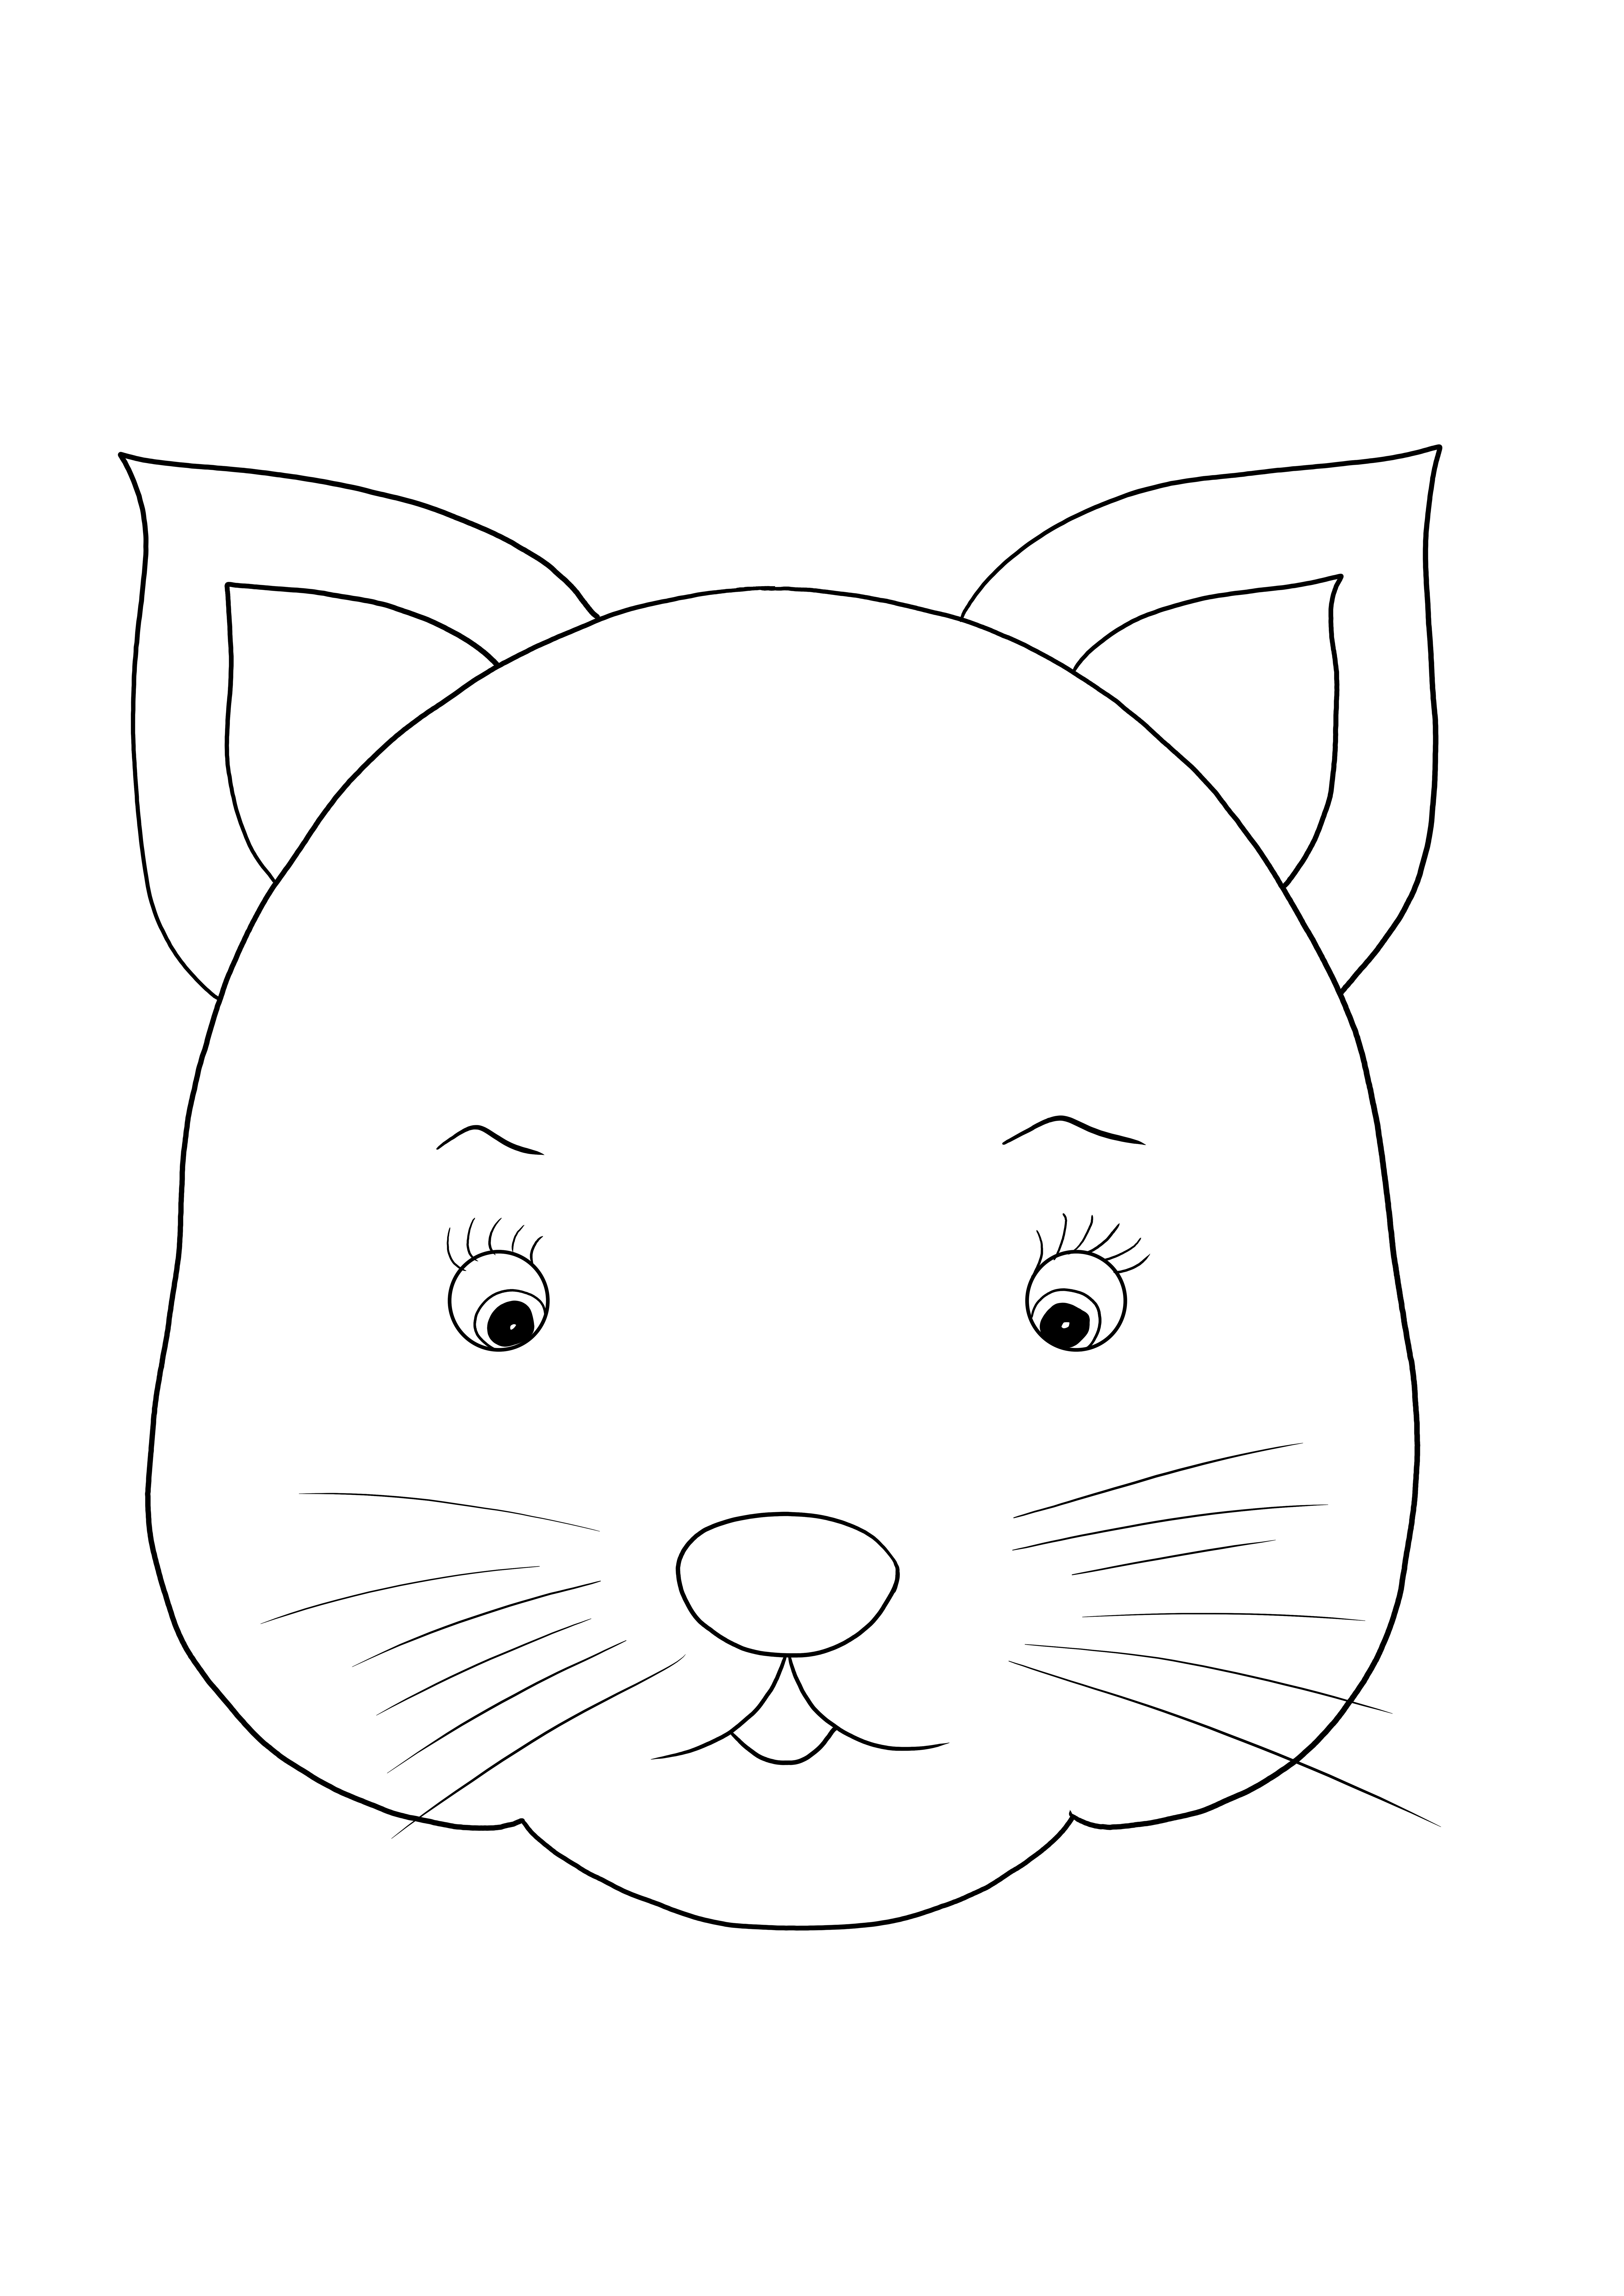 Çocukların basitçe basması ve renklendirmesi için ücretsiz şirin kedi yüzü